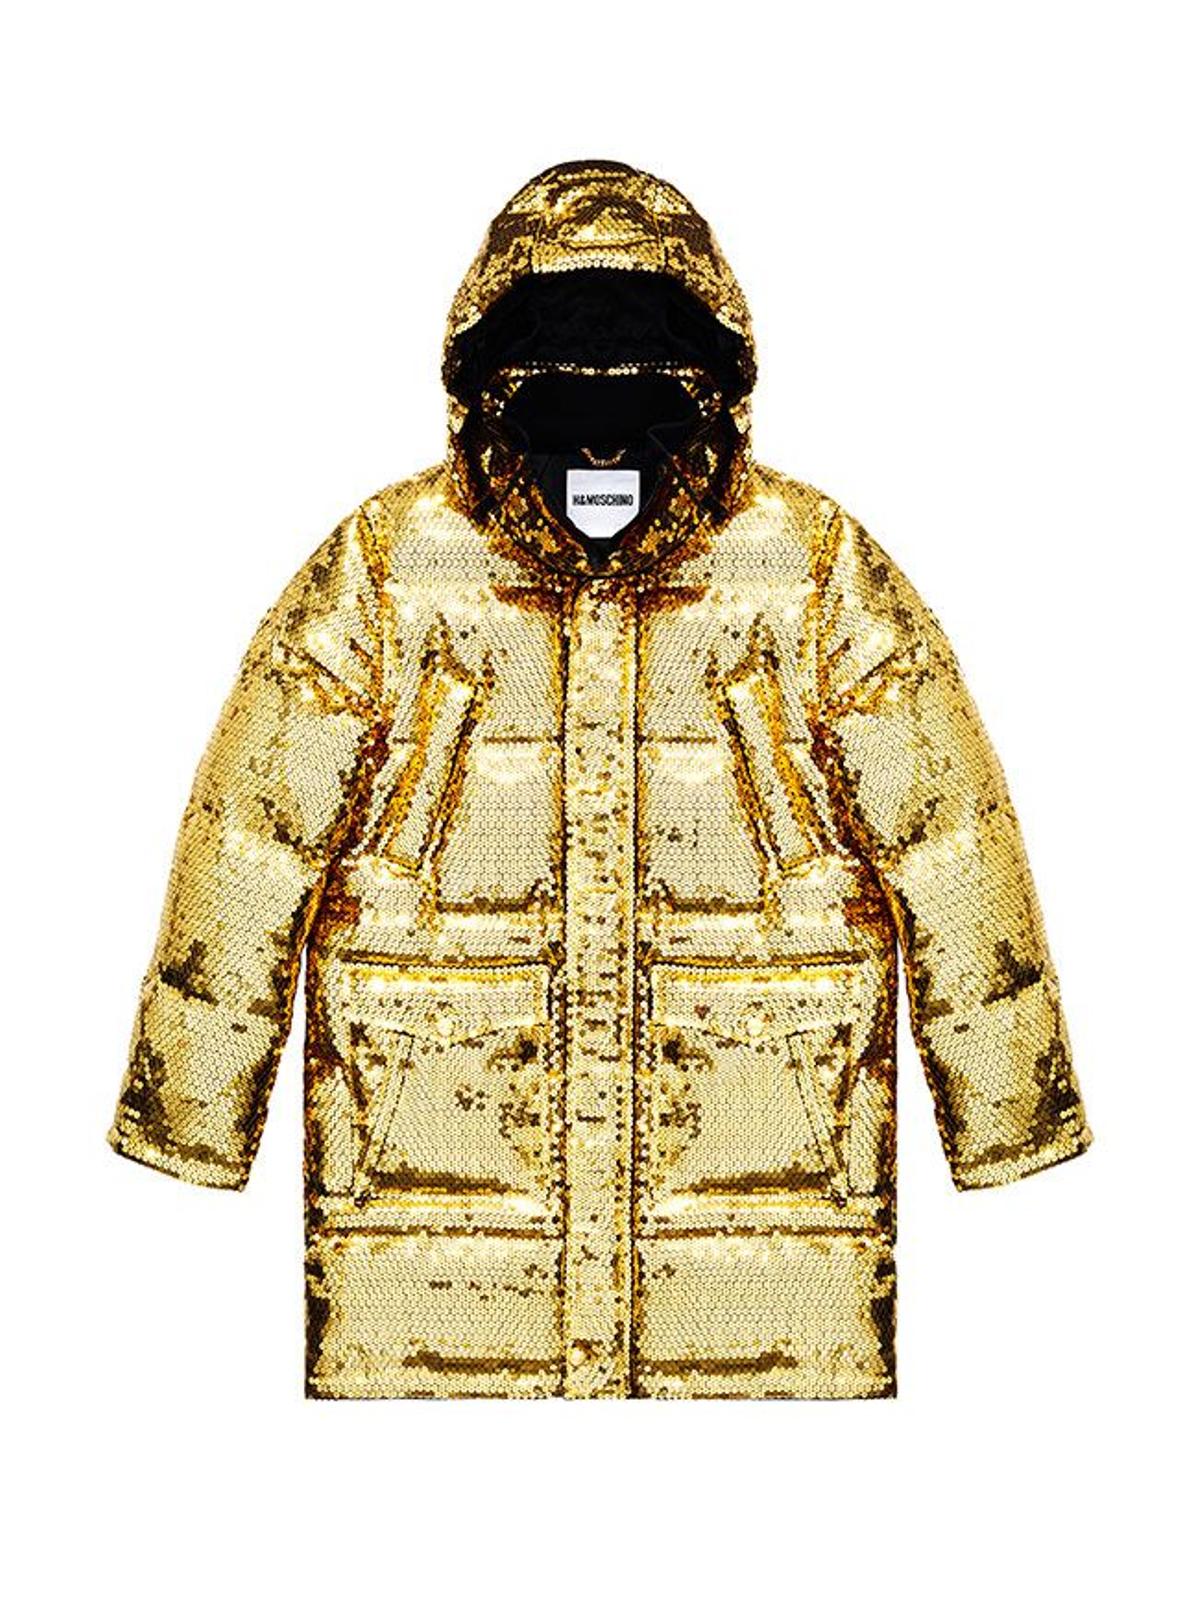 Todas las imágenes de la colección de Moschino x H&amp;M: abrigo acolchado dorado